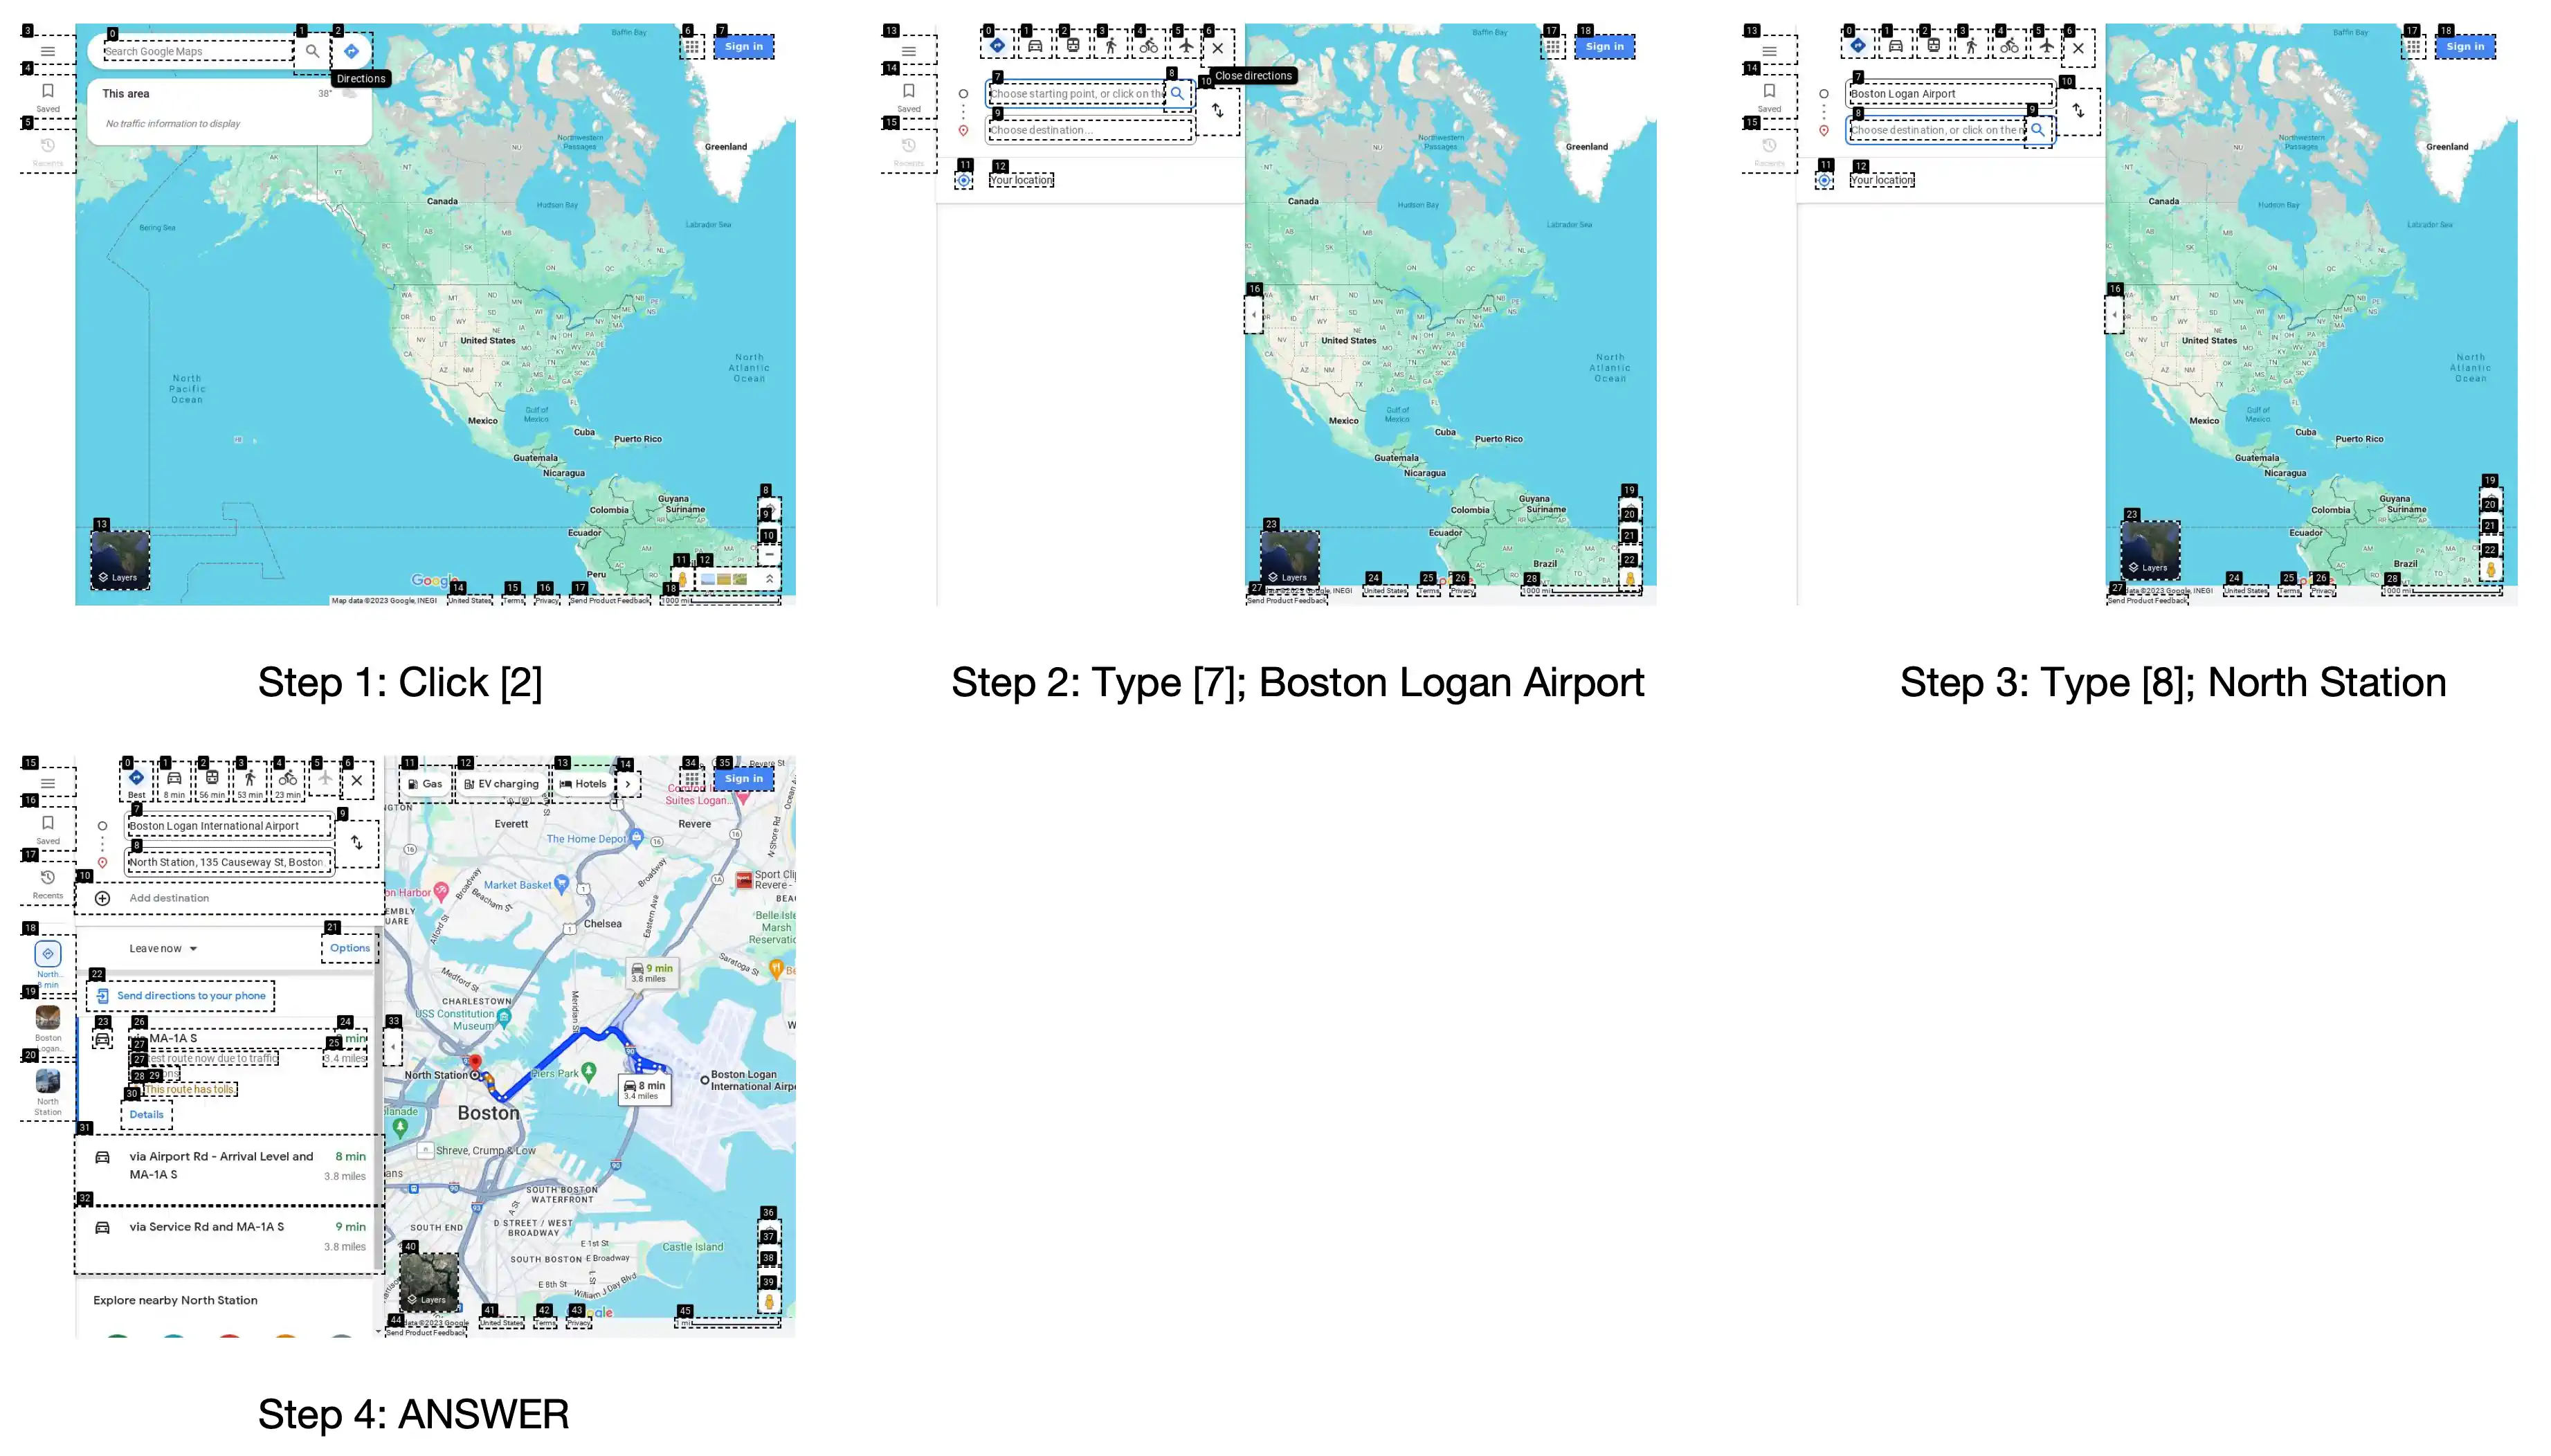 图 18: 展示了在 Google 地图上规划从波士顿洛根机场到北站旅程的完整过程截图。任务是规划这段旅程的最快路线。结果表明，从波士顿洛根国际机场到北站最快的路线是通过 MA-1A S，当前交通条件下预计耗时约 8 分钟。